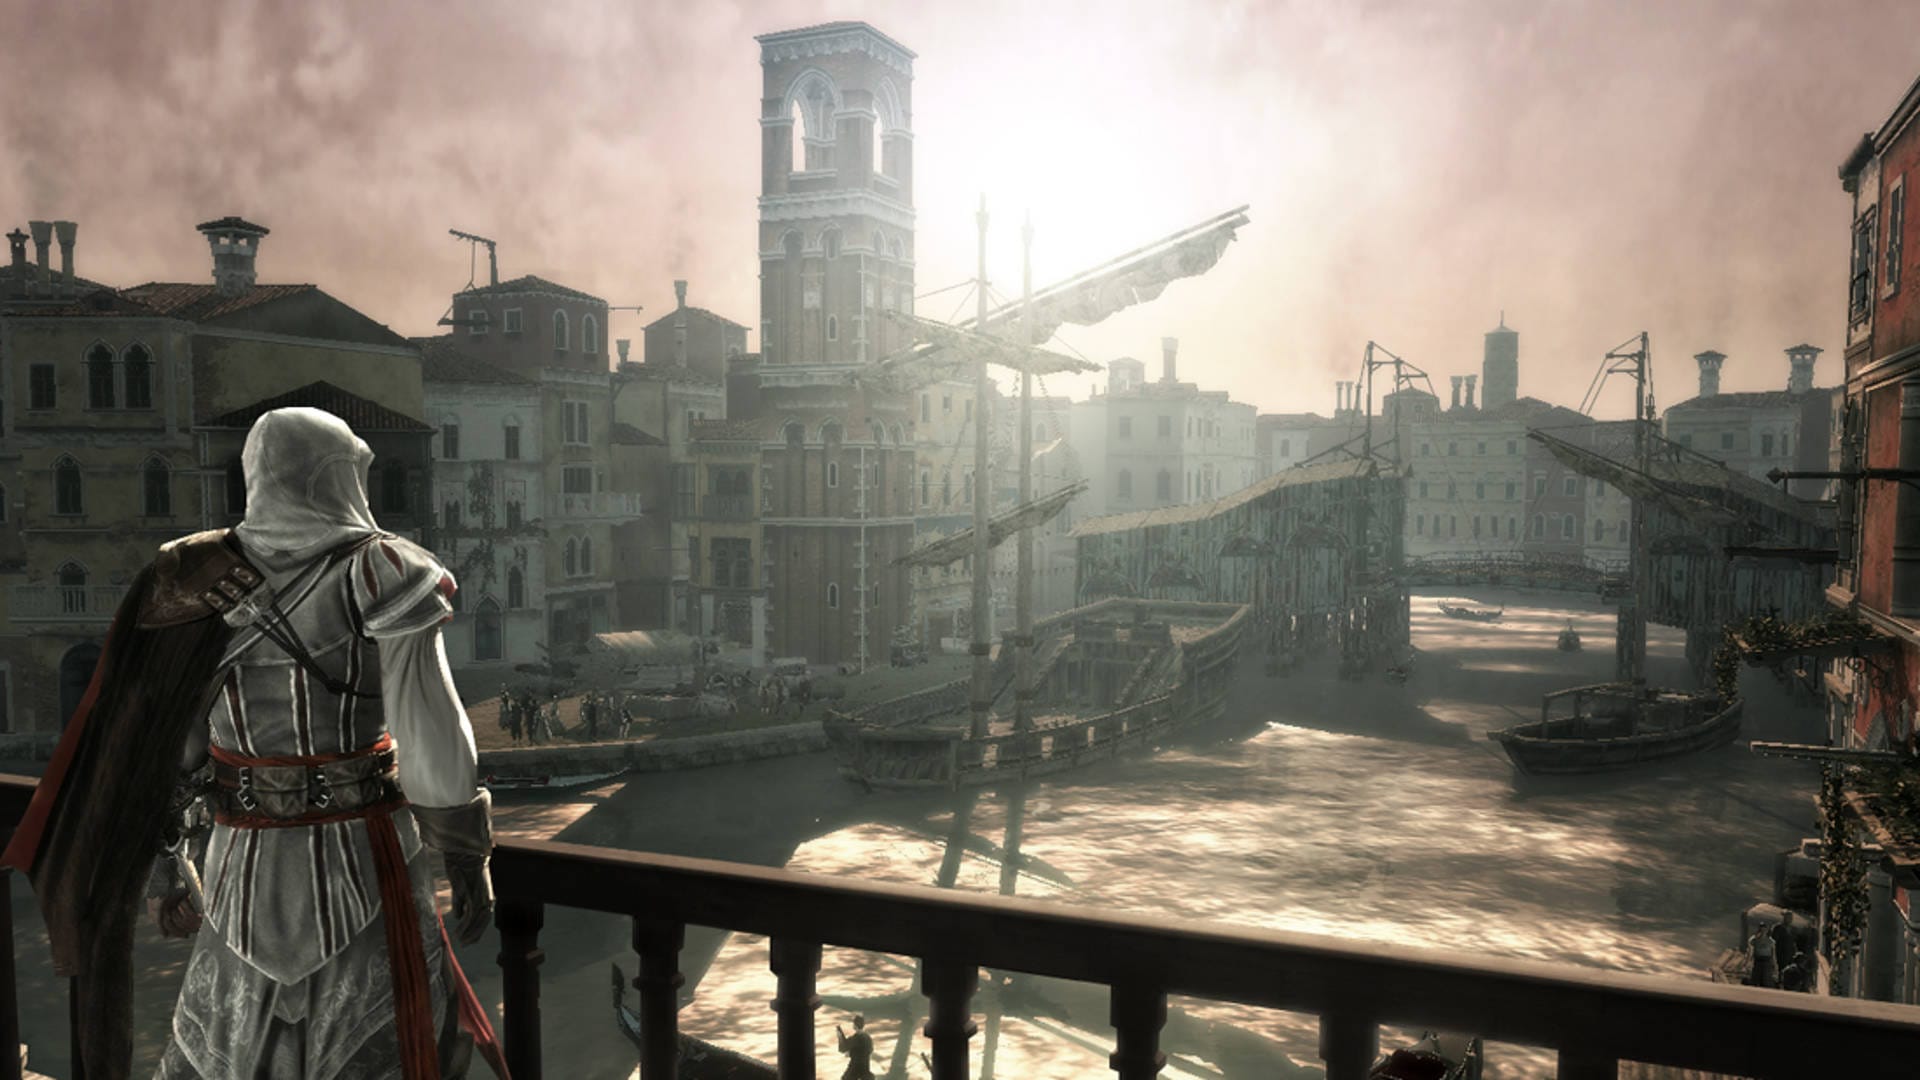 Samenwerking Knorretje Vlieger Assassin's Creed 2 Among Ubisoft Games Losing Online Features | TechRaptor